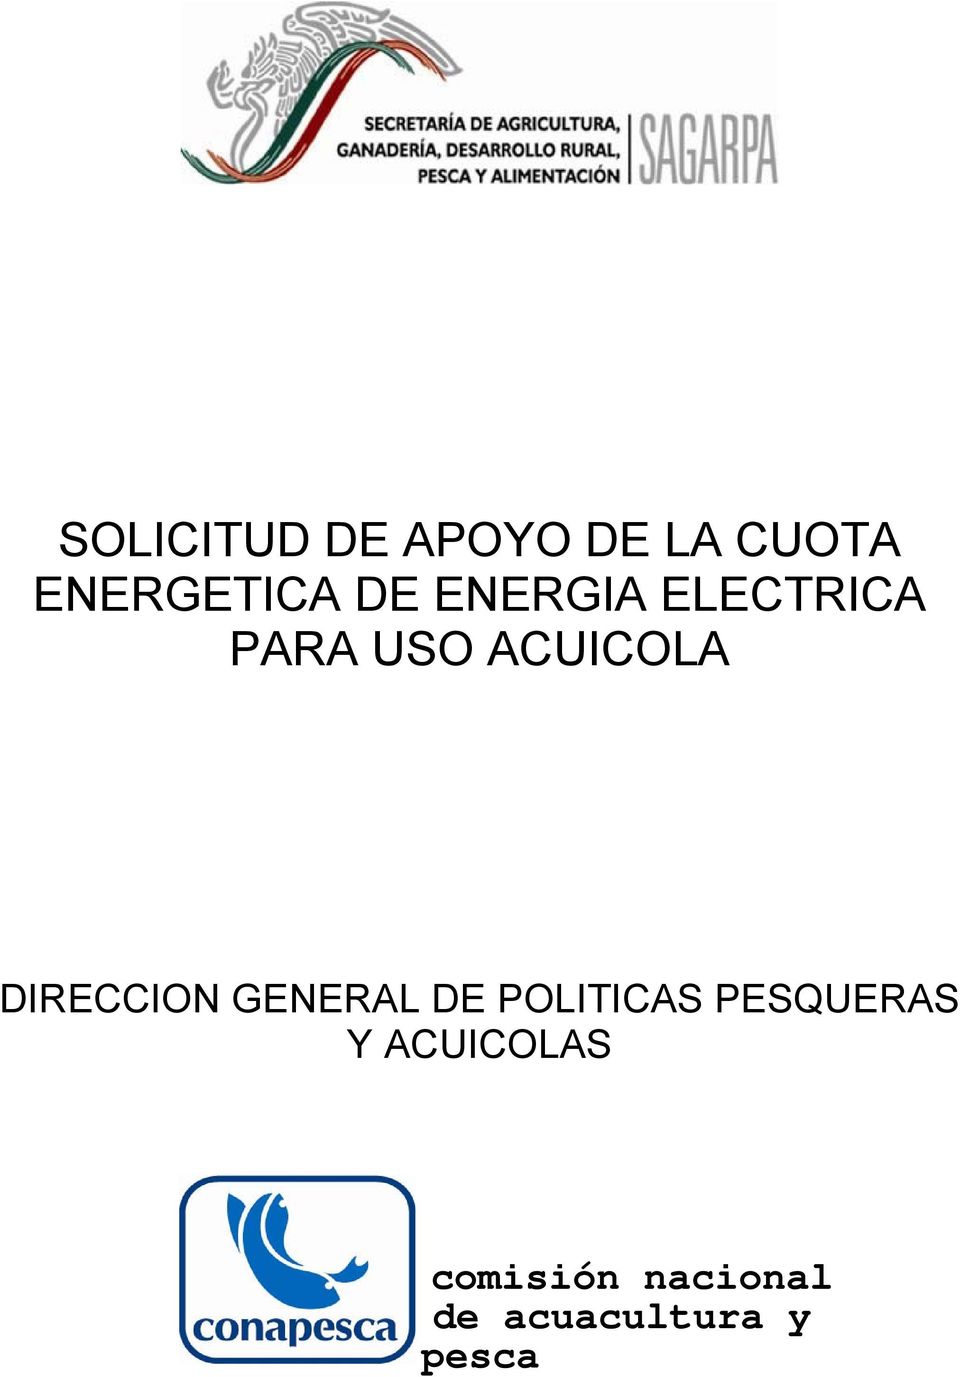 DIRECCION GENERAL DE POLITICAS PESQUERAS Y